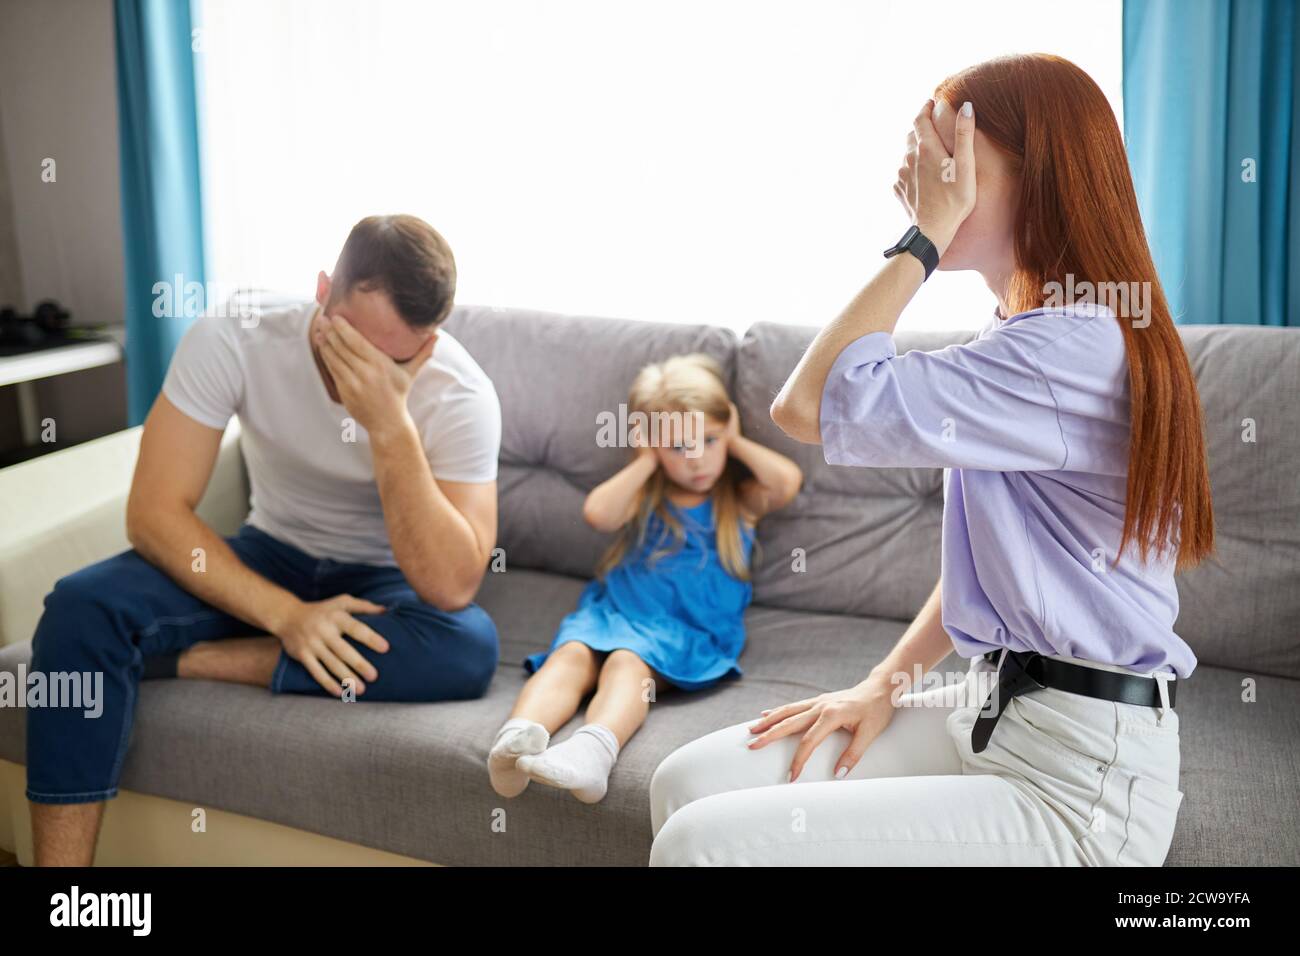 Traurige, verzweifelte kleine Mädchen während der Eltern streiten, verstopfen sie die Ohren sitzen auf dem Sofa zu Hause, zornige Eltern kämpfen. Besorgt verärgert kleine Tochter verletzt von Vätern und Müttern brechen oder Scheidung Stockfoto